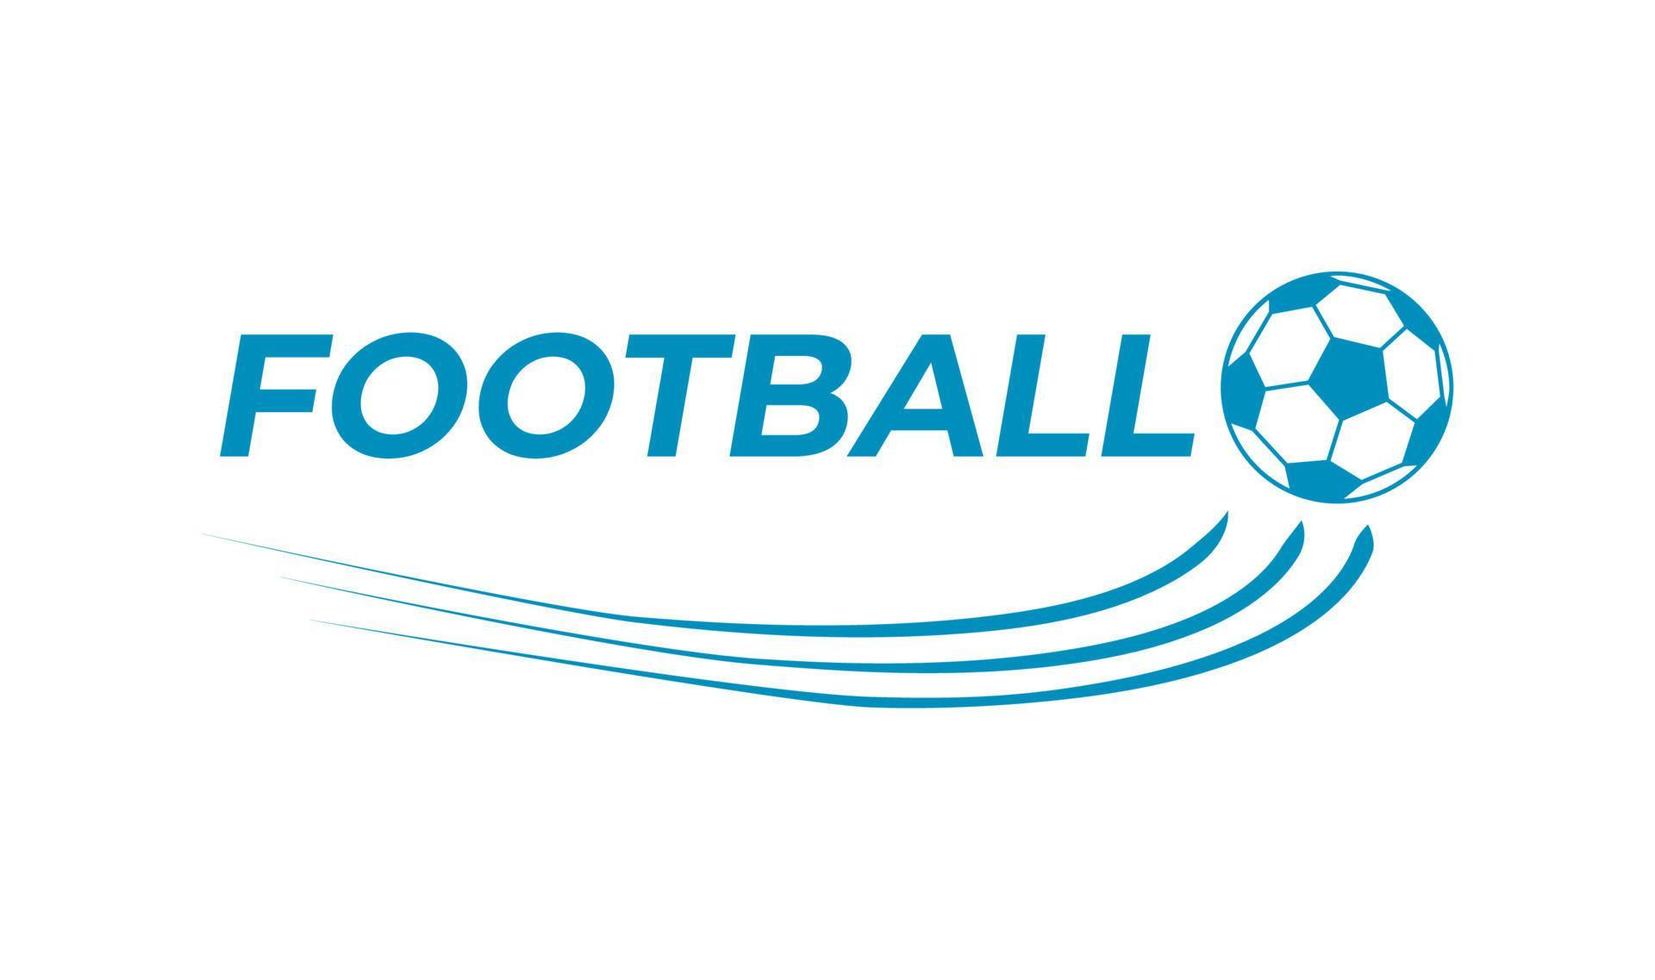 eenvoudig logo, illustratie en vector over voetbal met één kleurenmodel